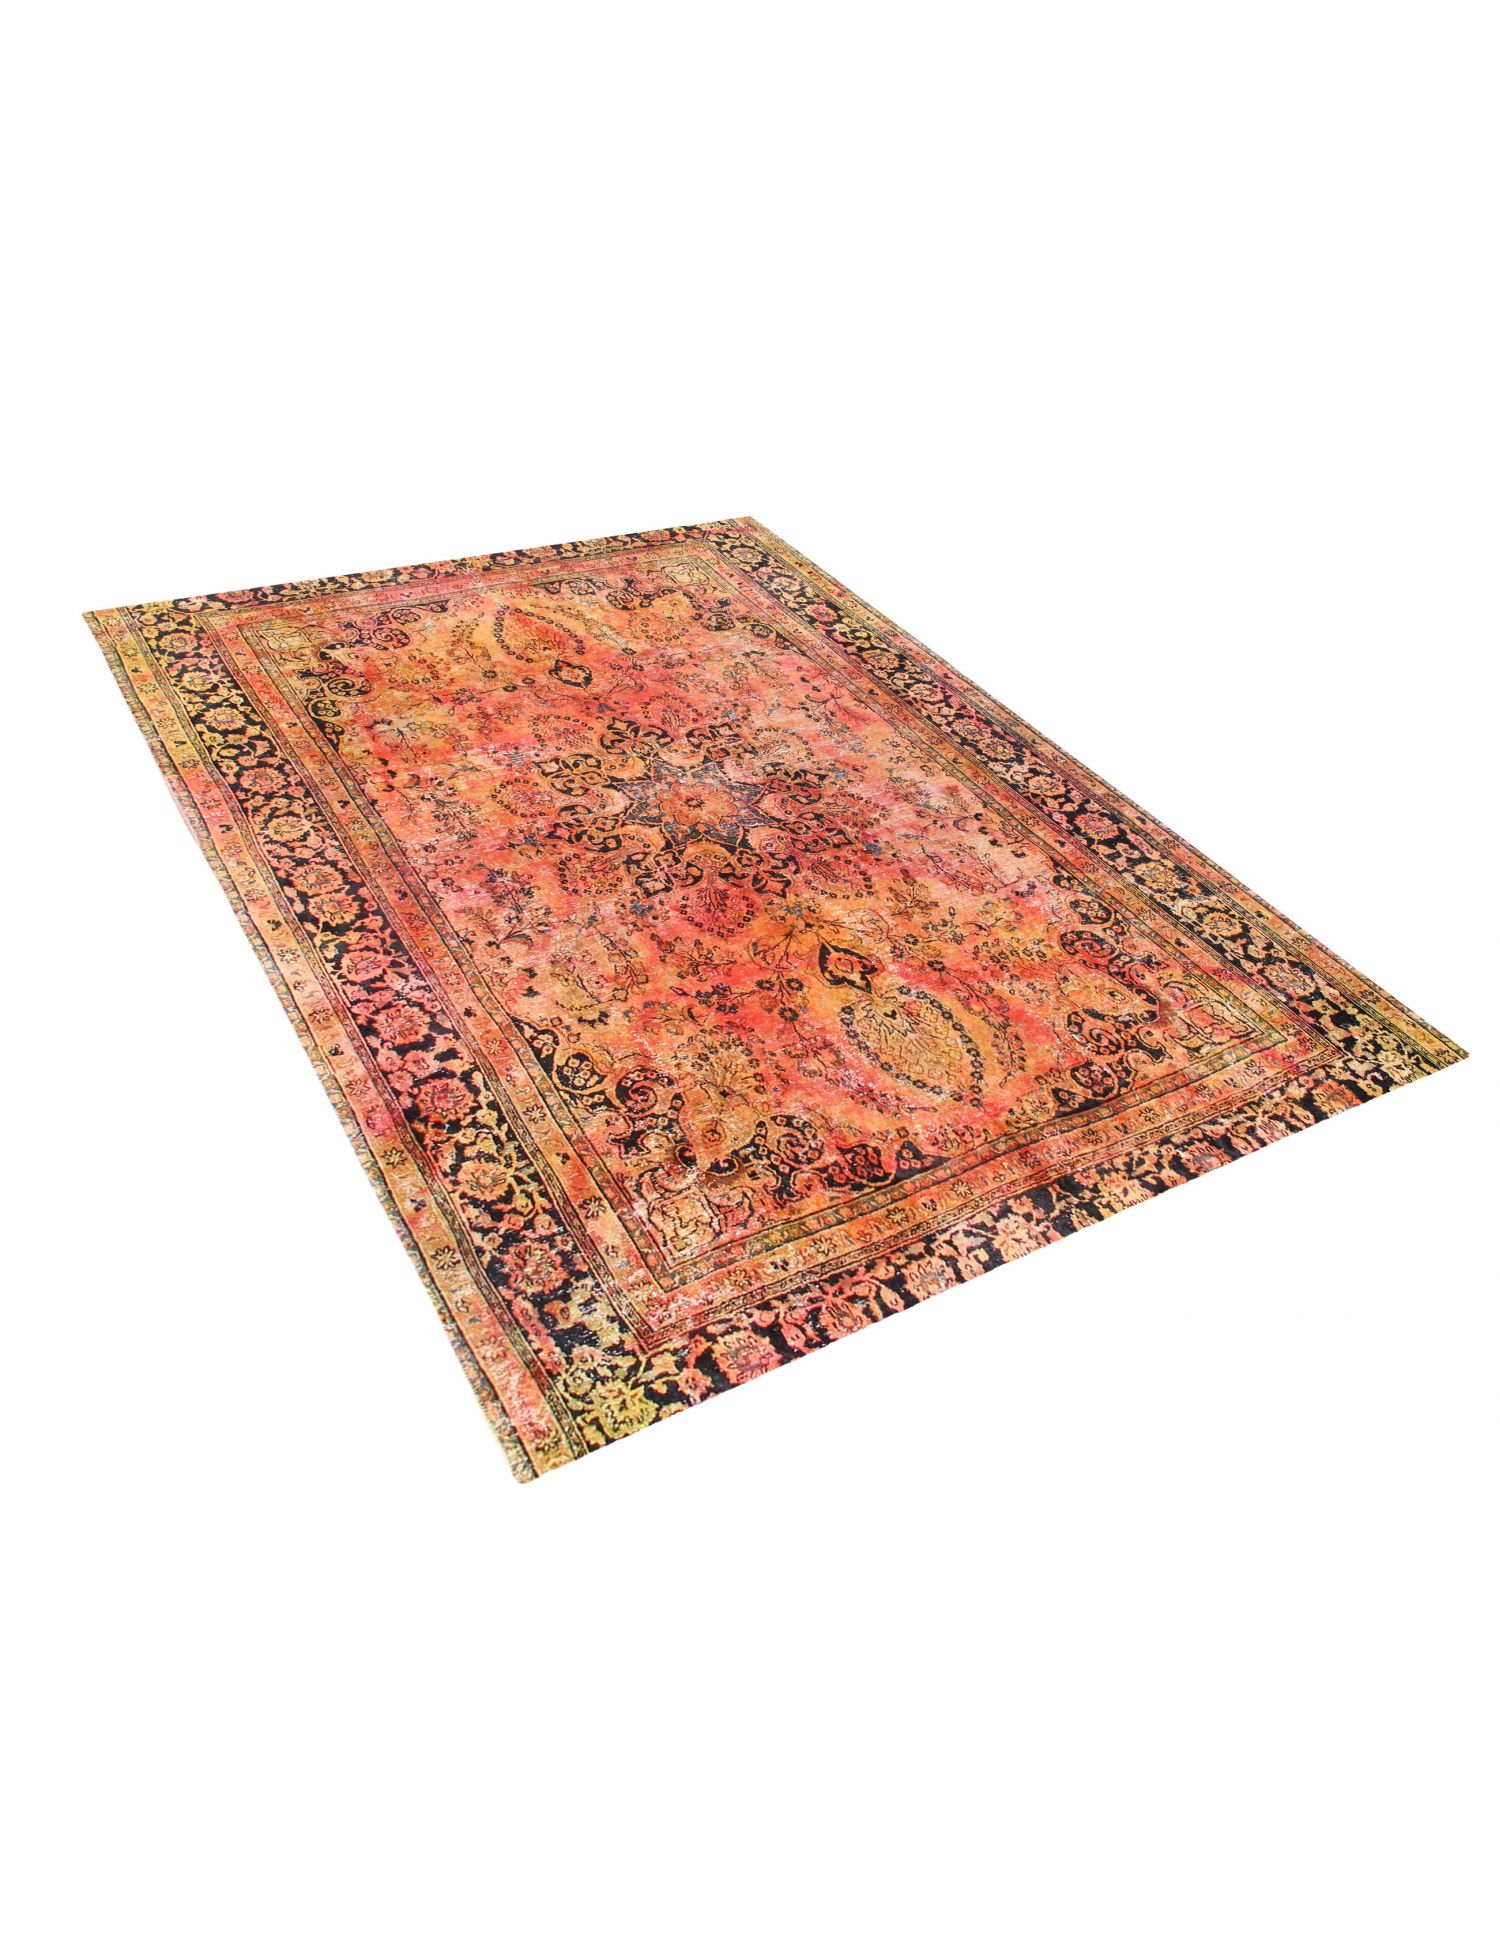 Persischer vintage teppich  mehrfarbig <br/>330 x 288 cm